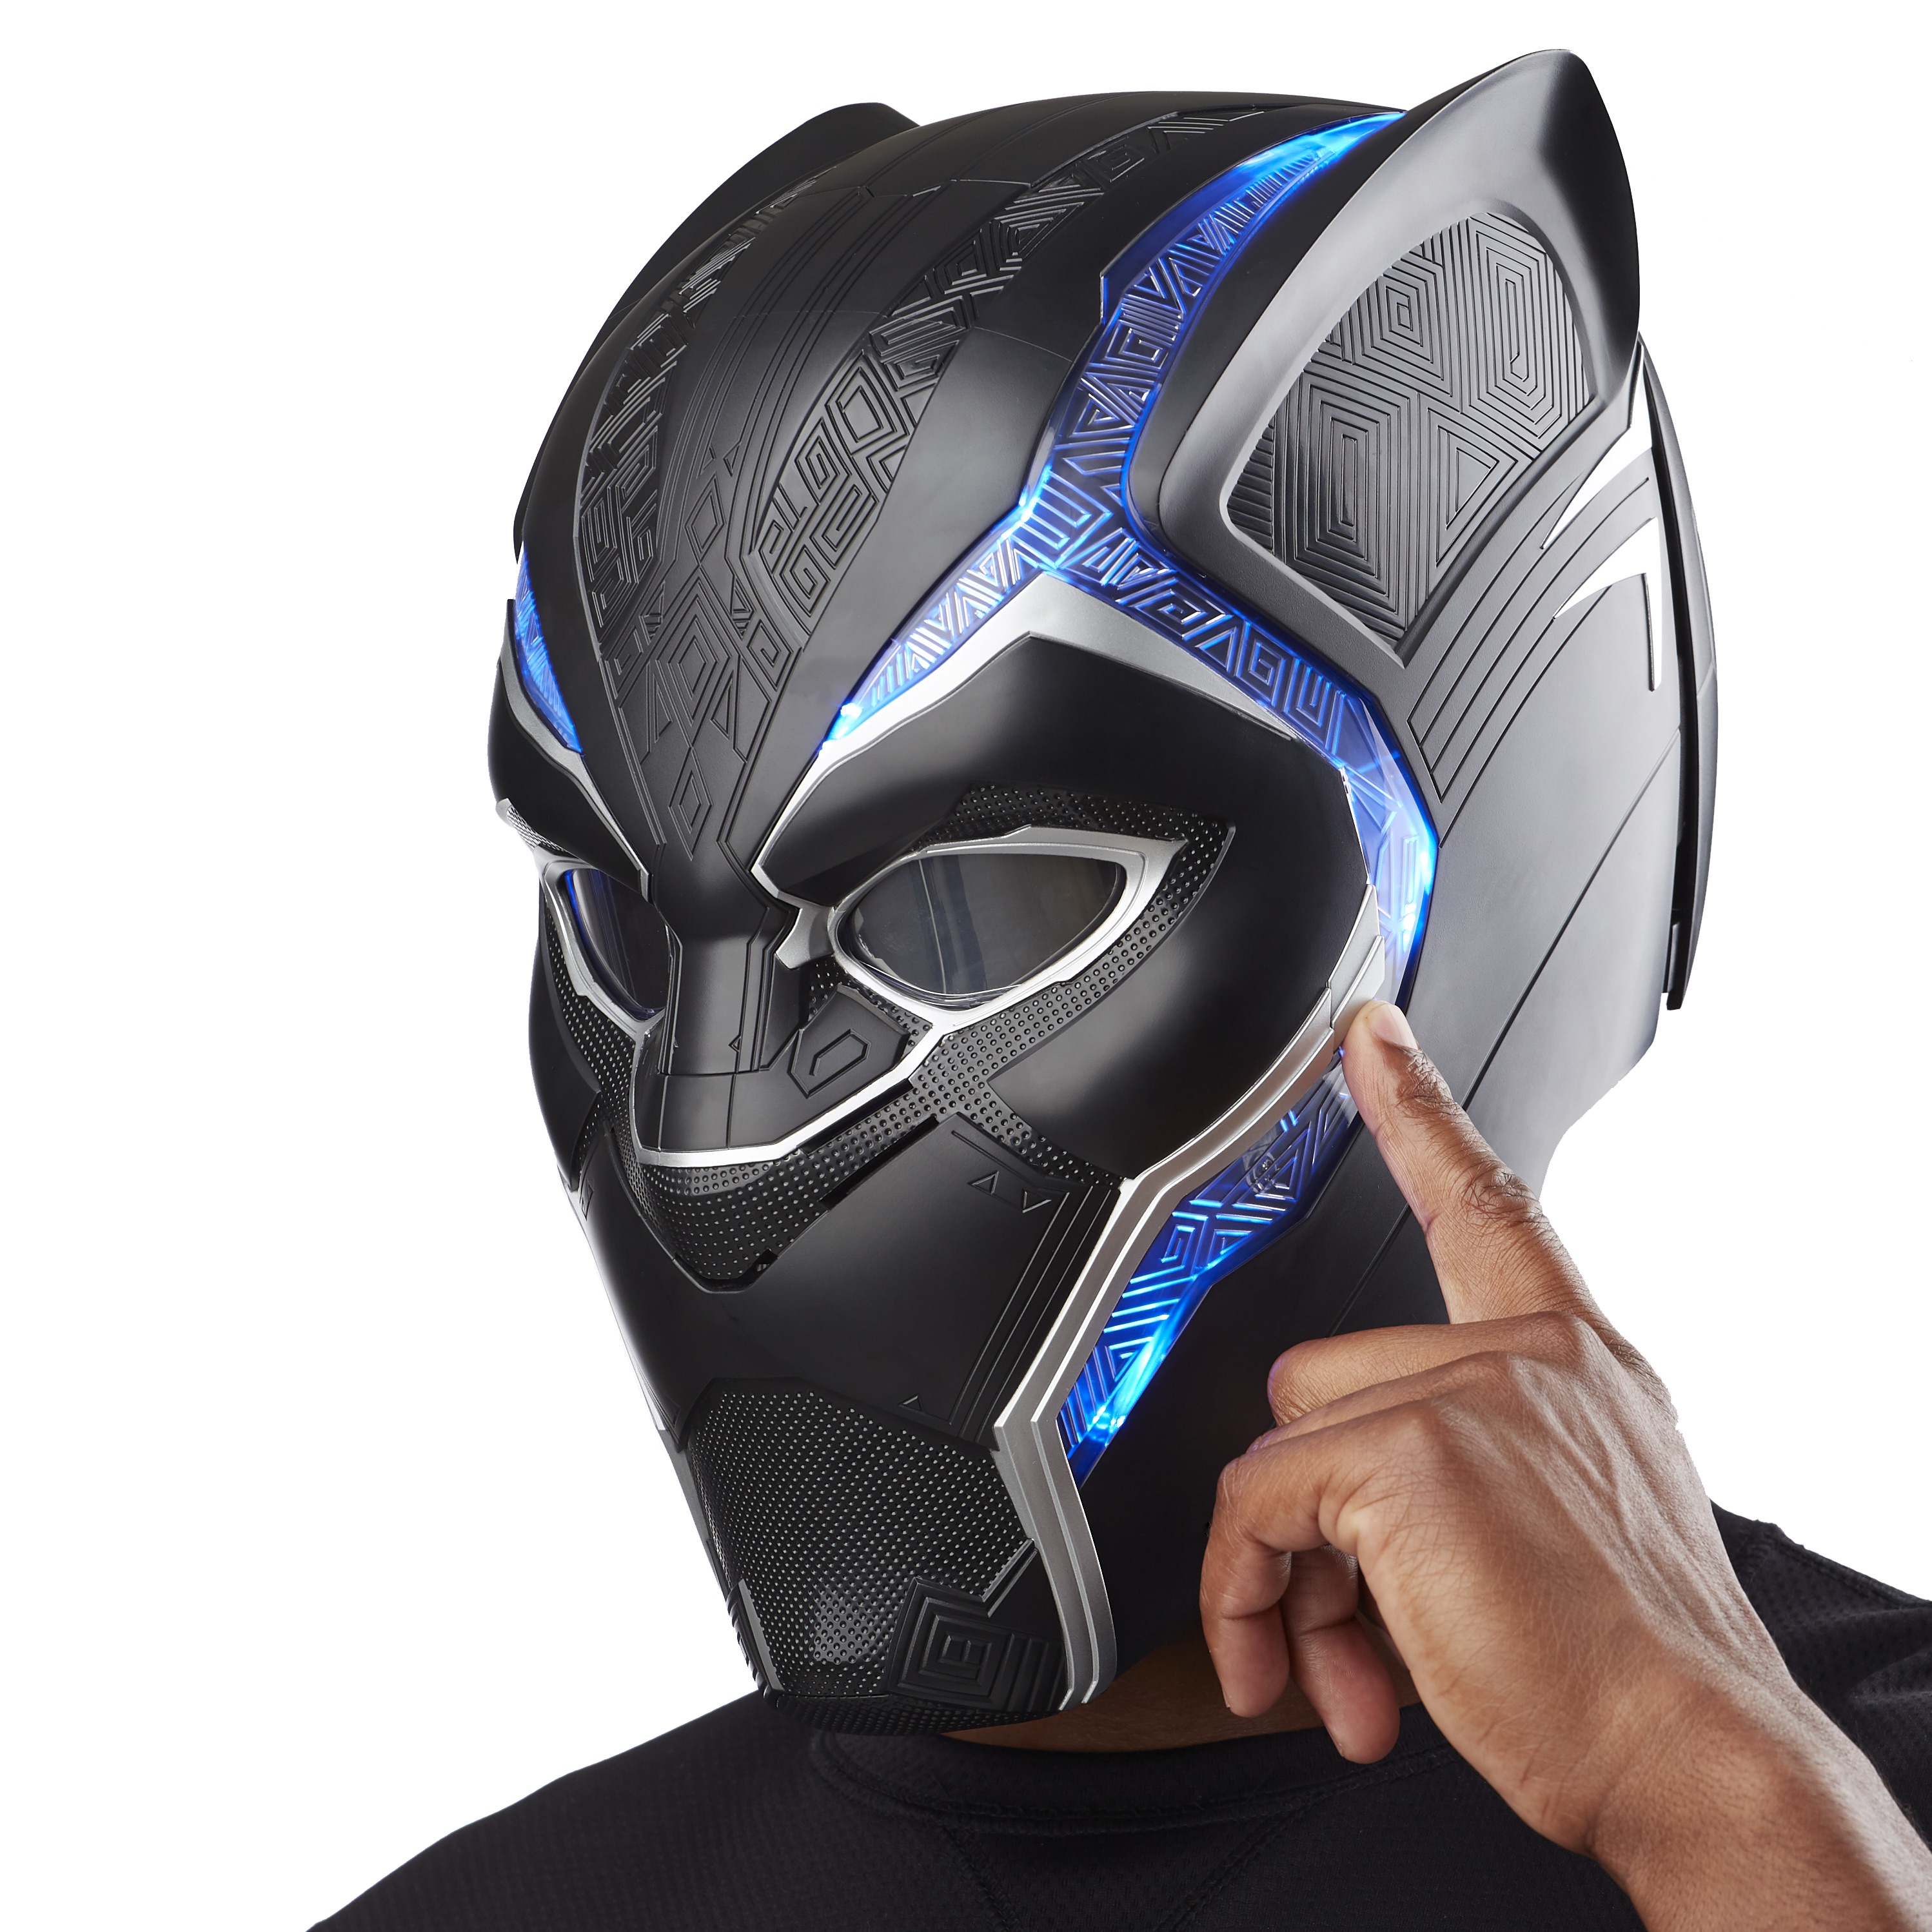 Marvel Legends Series Black Panther Electronic Helmet